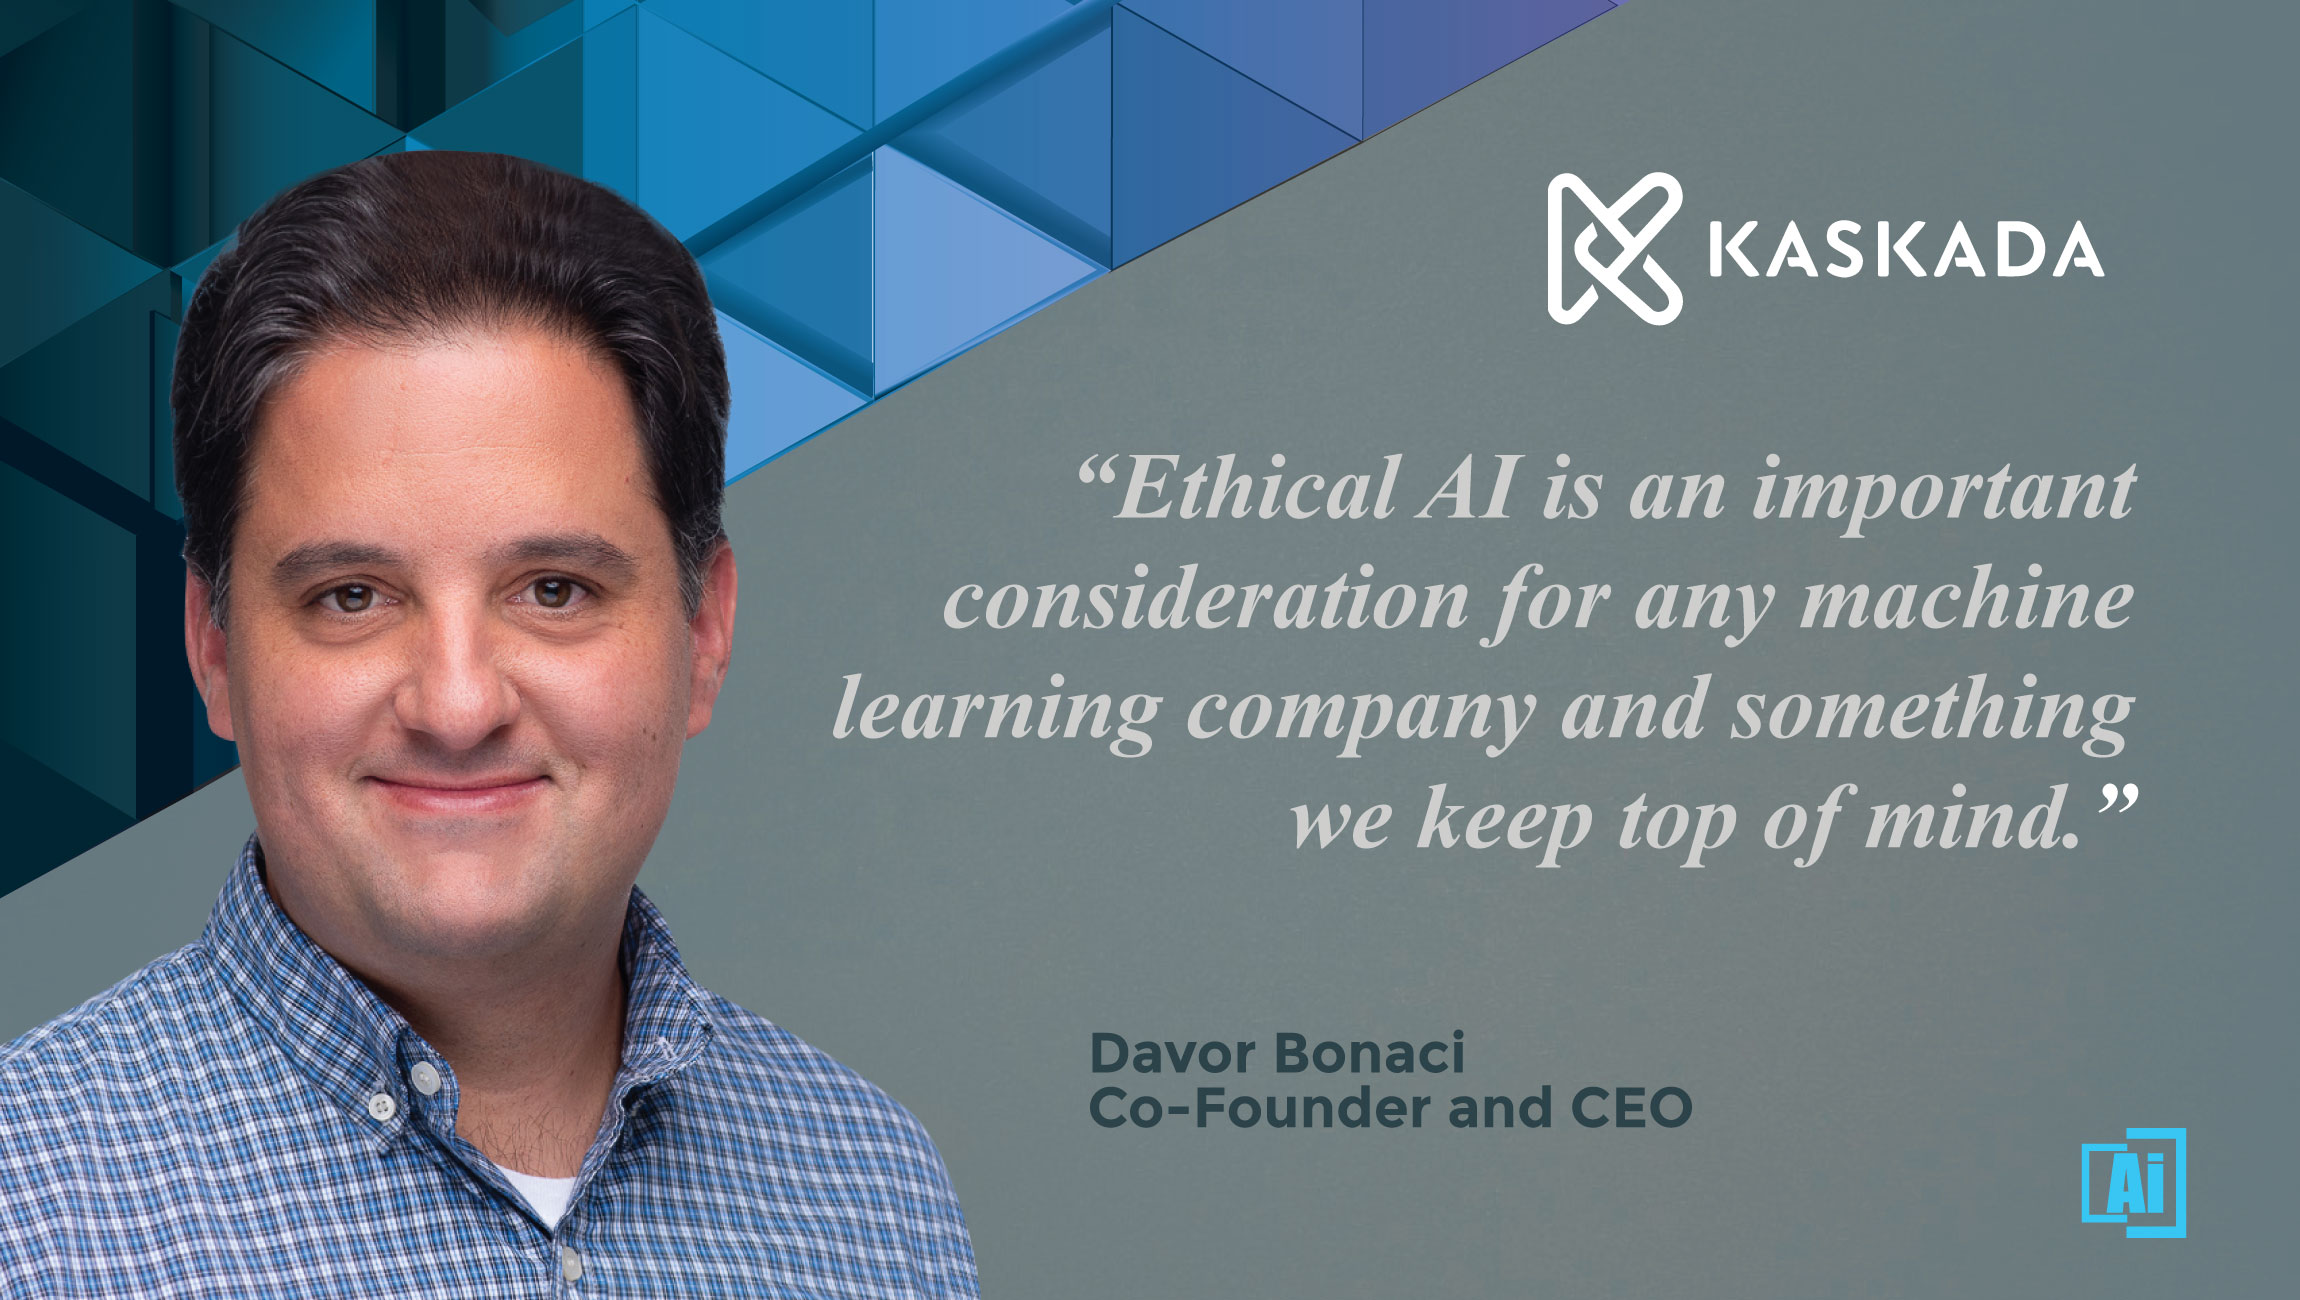 Davor Bonaci, CEO at Kaskada quotes